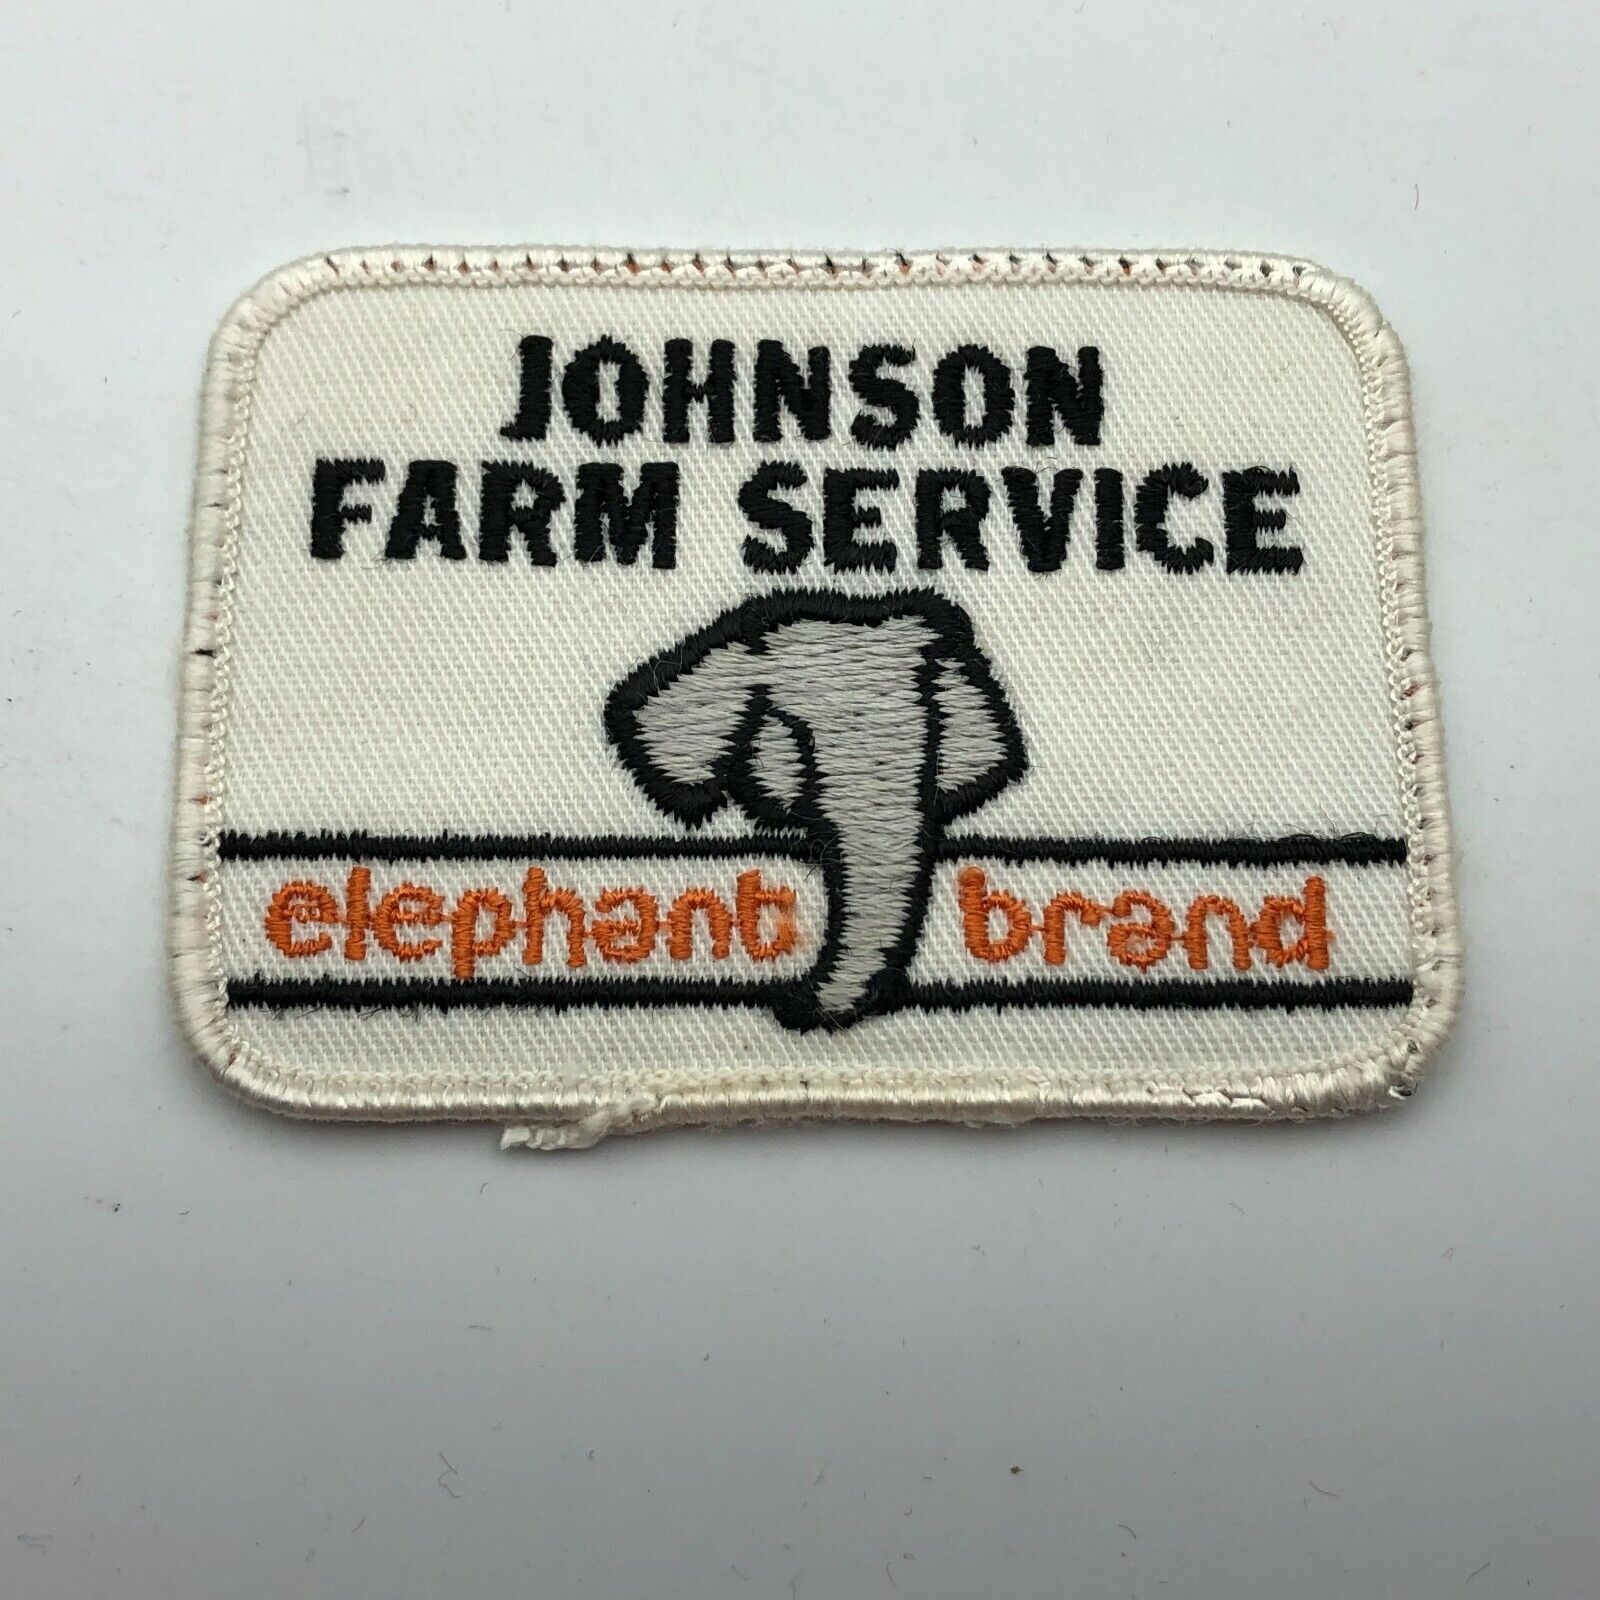 JOHNSON FARM SERVICE Elephant Brand Agriculture Hat Uniform Patch Vintage Scarce